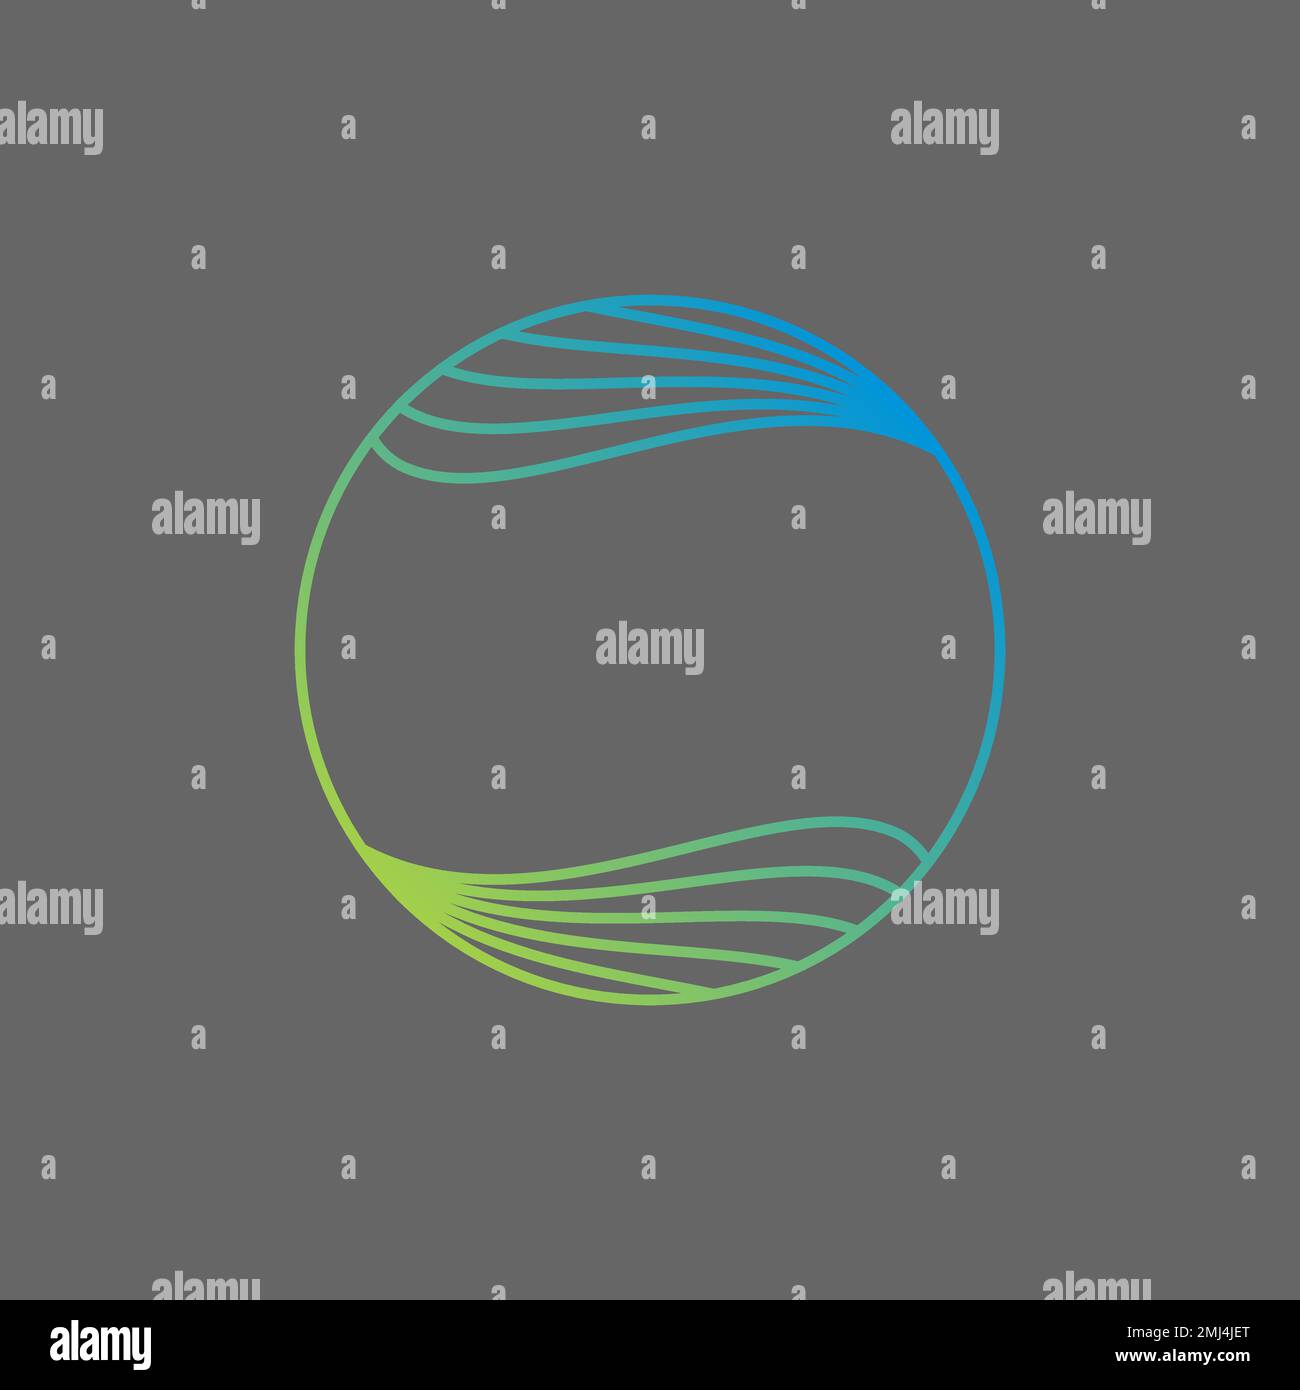 Líneas de reflexión simples y únicas Sonido atractivo círculo de onda de audio icono gráfico diseño de logotipo concepto abstracto vector stock art music Ilustración del Vector